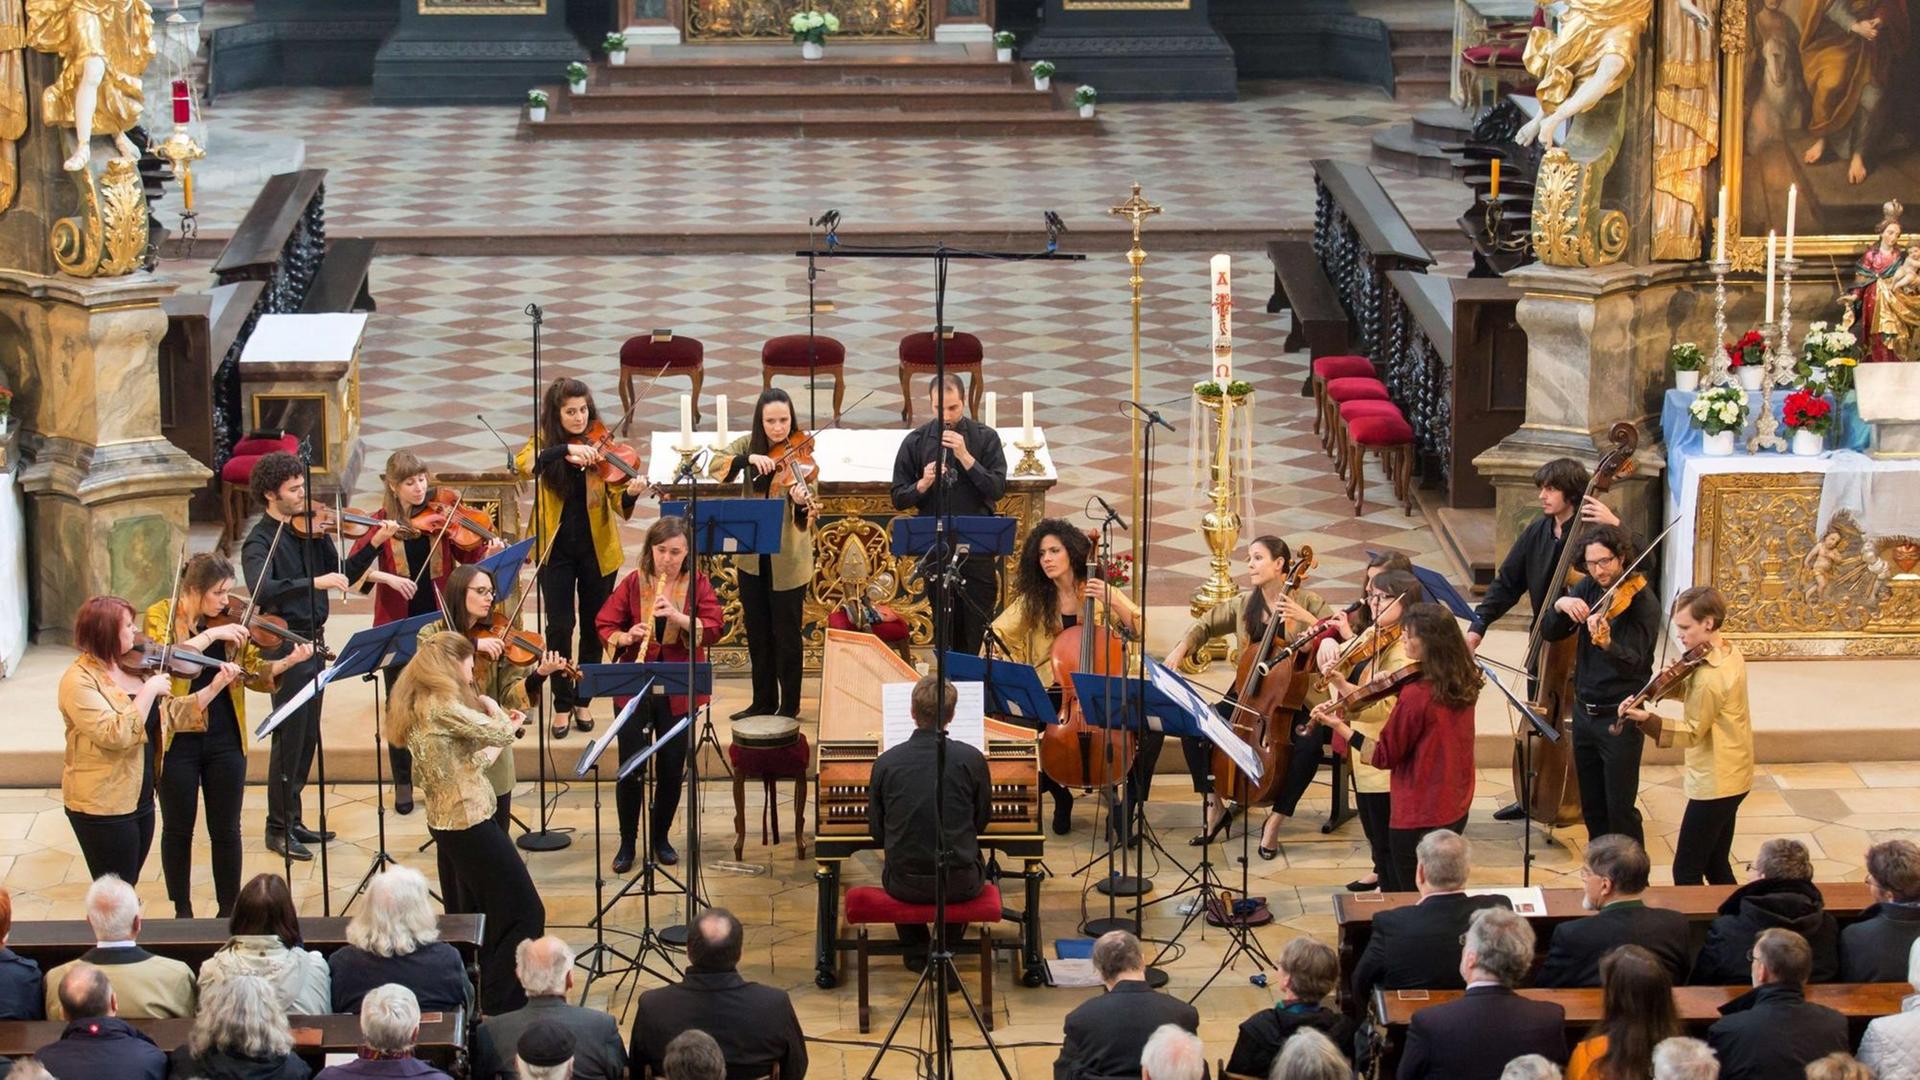 Die Musikerinnen und Musiker des Barockorchesters der Europäischen Union spielen überwiegend stehend im Altarvorraum einer Kirche. In deren Mitte sitzt der Cembalist an seinem Instrument. Der Boden ist hell gefließt, Mikrofone sind aufgestellt. Das Publikum sitzt davor auf Kirchenbänken.